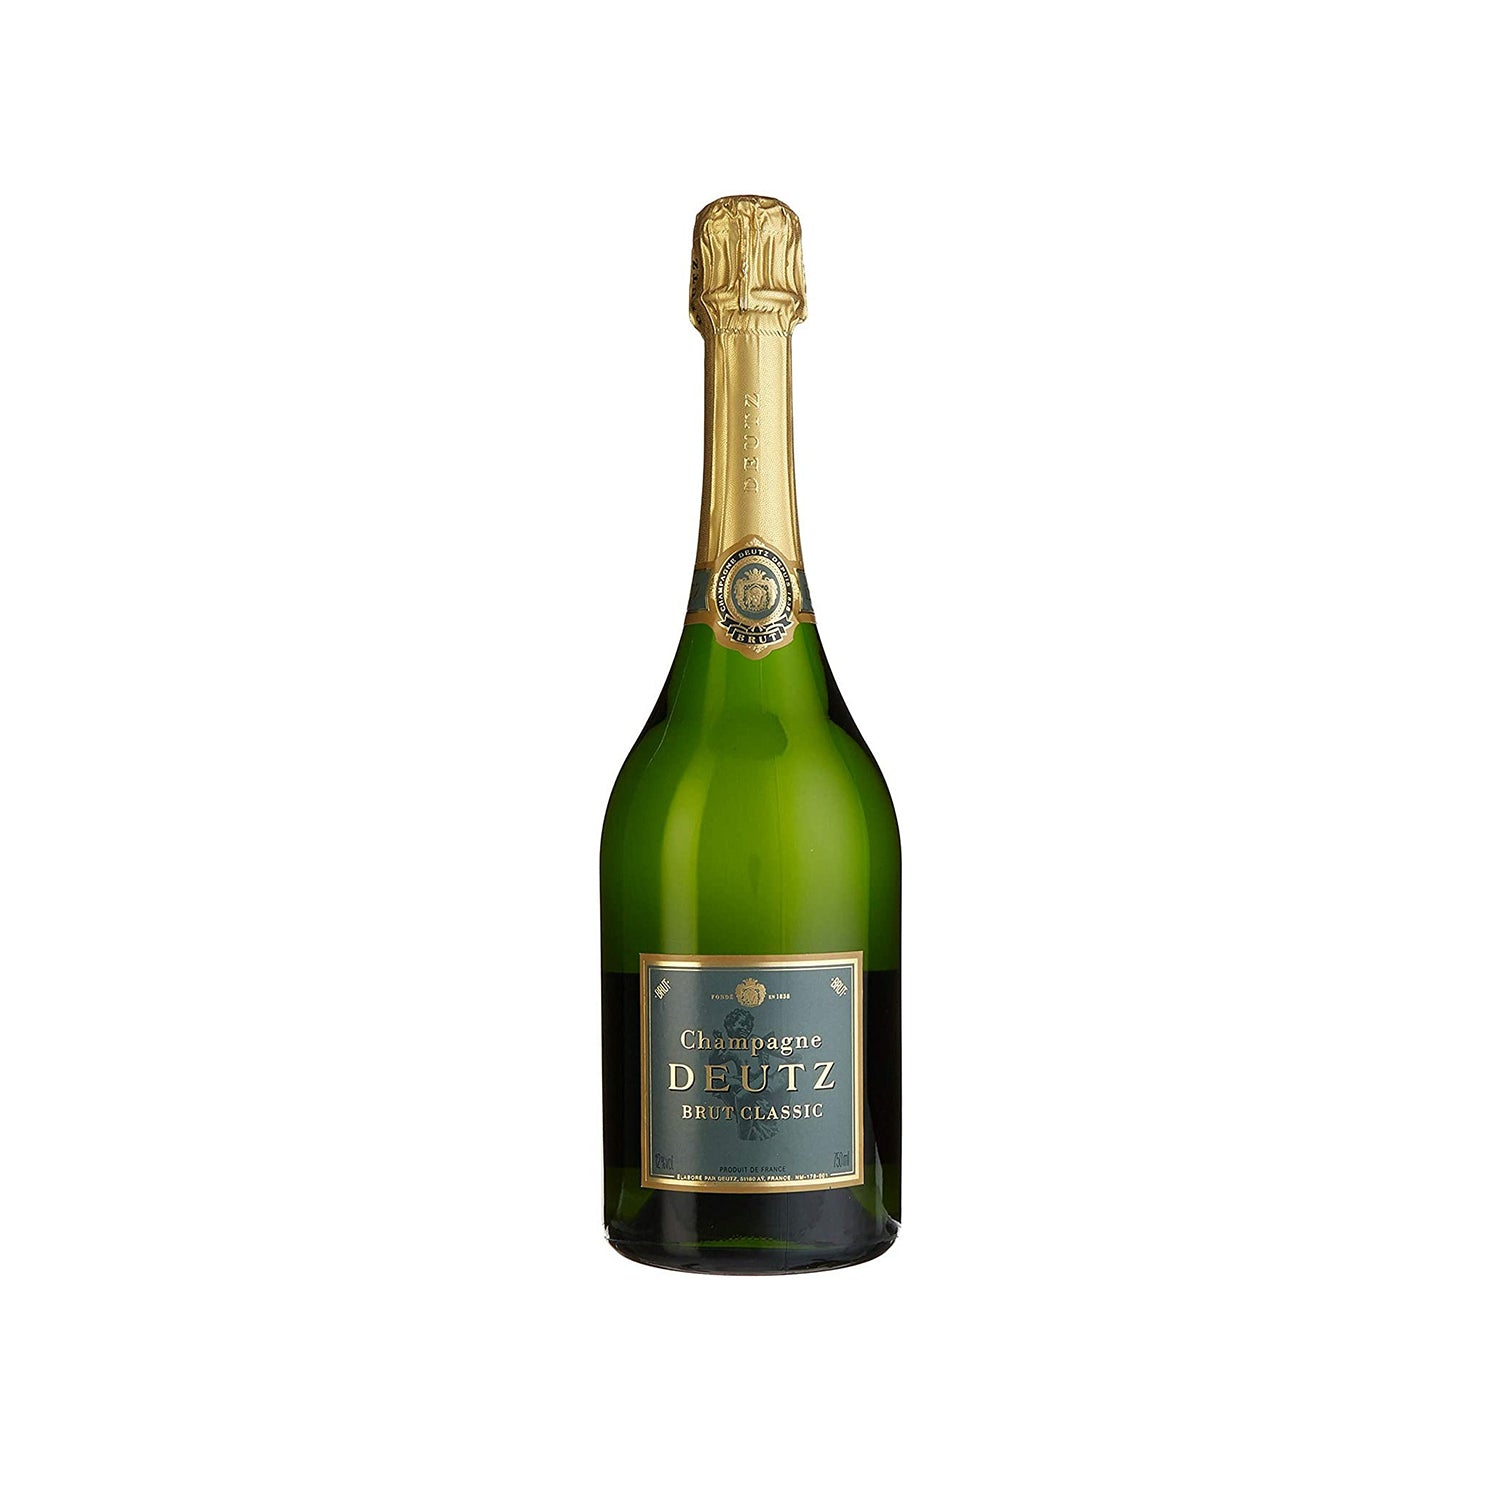 immagine-1-duca-di-salaparuta-deutz-brut-classic-champagne-aoc-cl-75-gd-12-ean-3359950186119